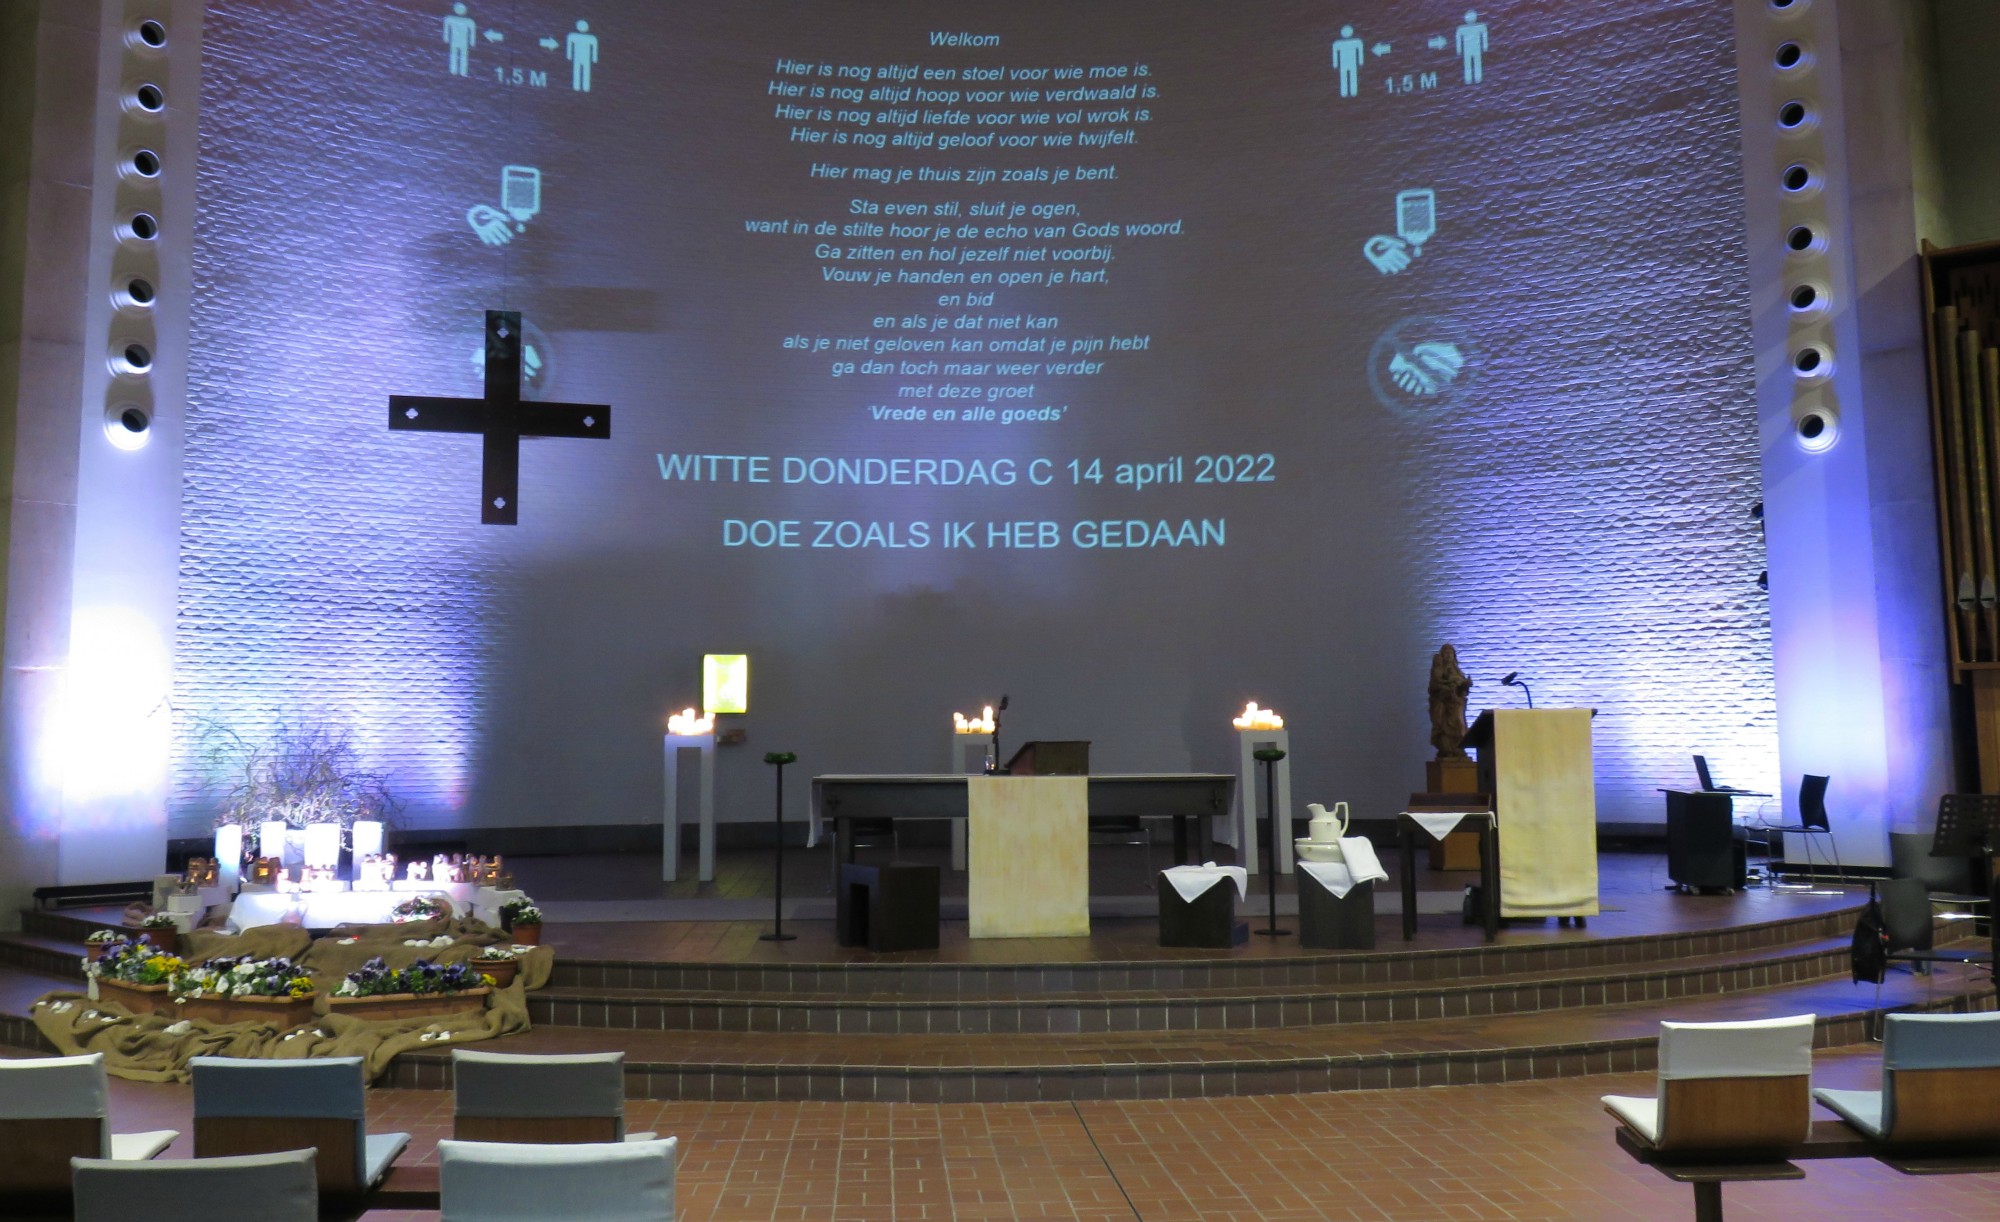 Warm welkom voor de viering van Witte Donderdag - Sint-Anna-ten-Drieënkerk, Antwerpen Linkeroever